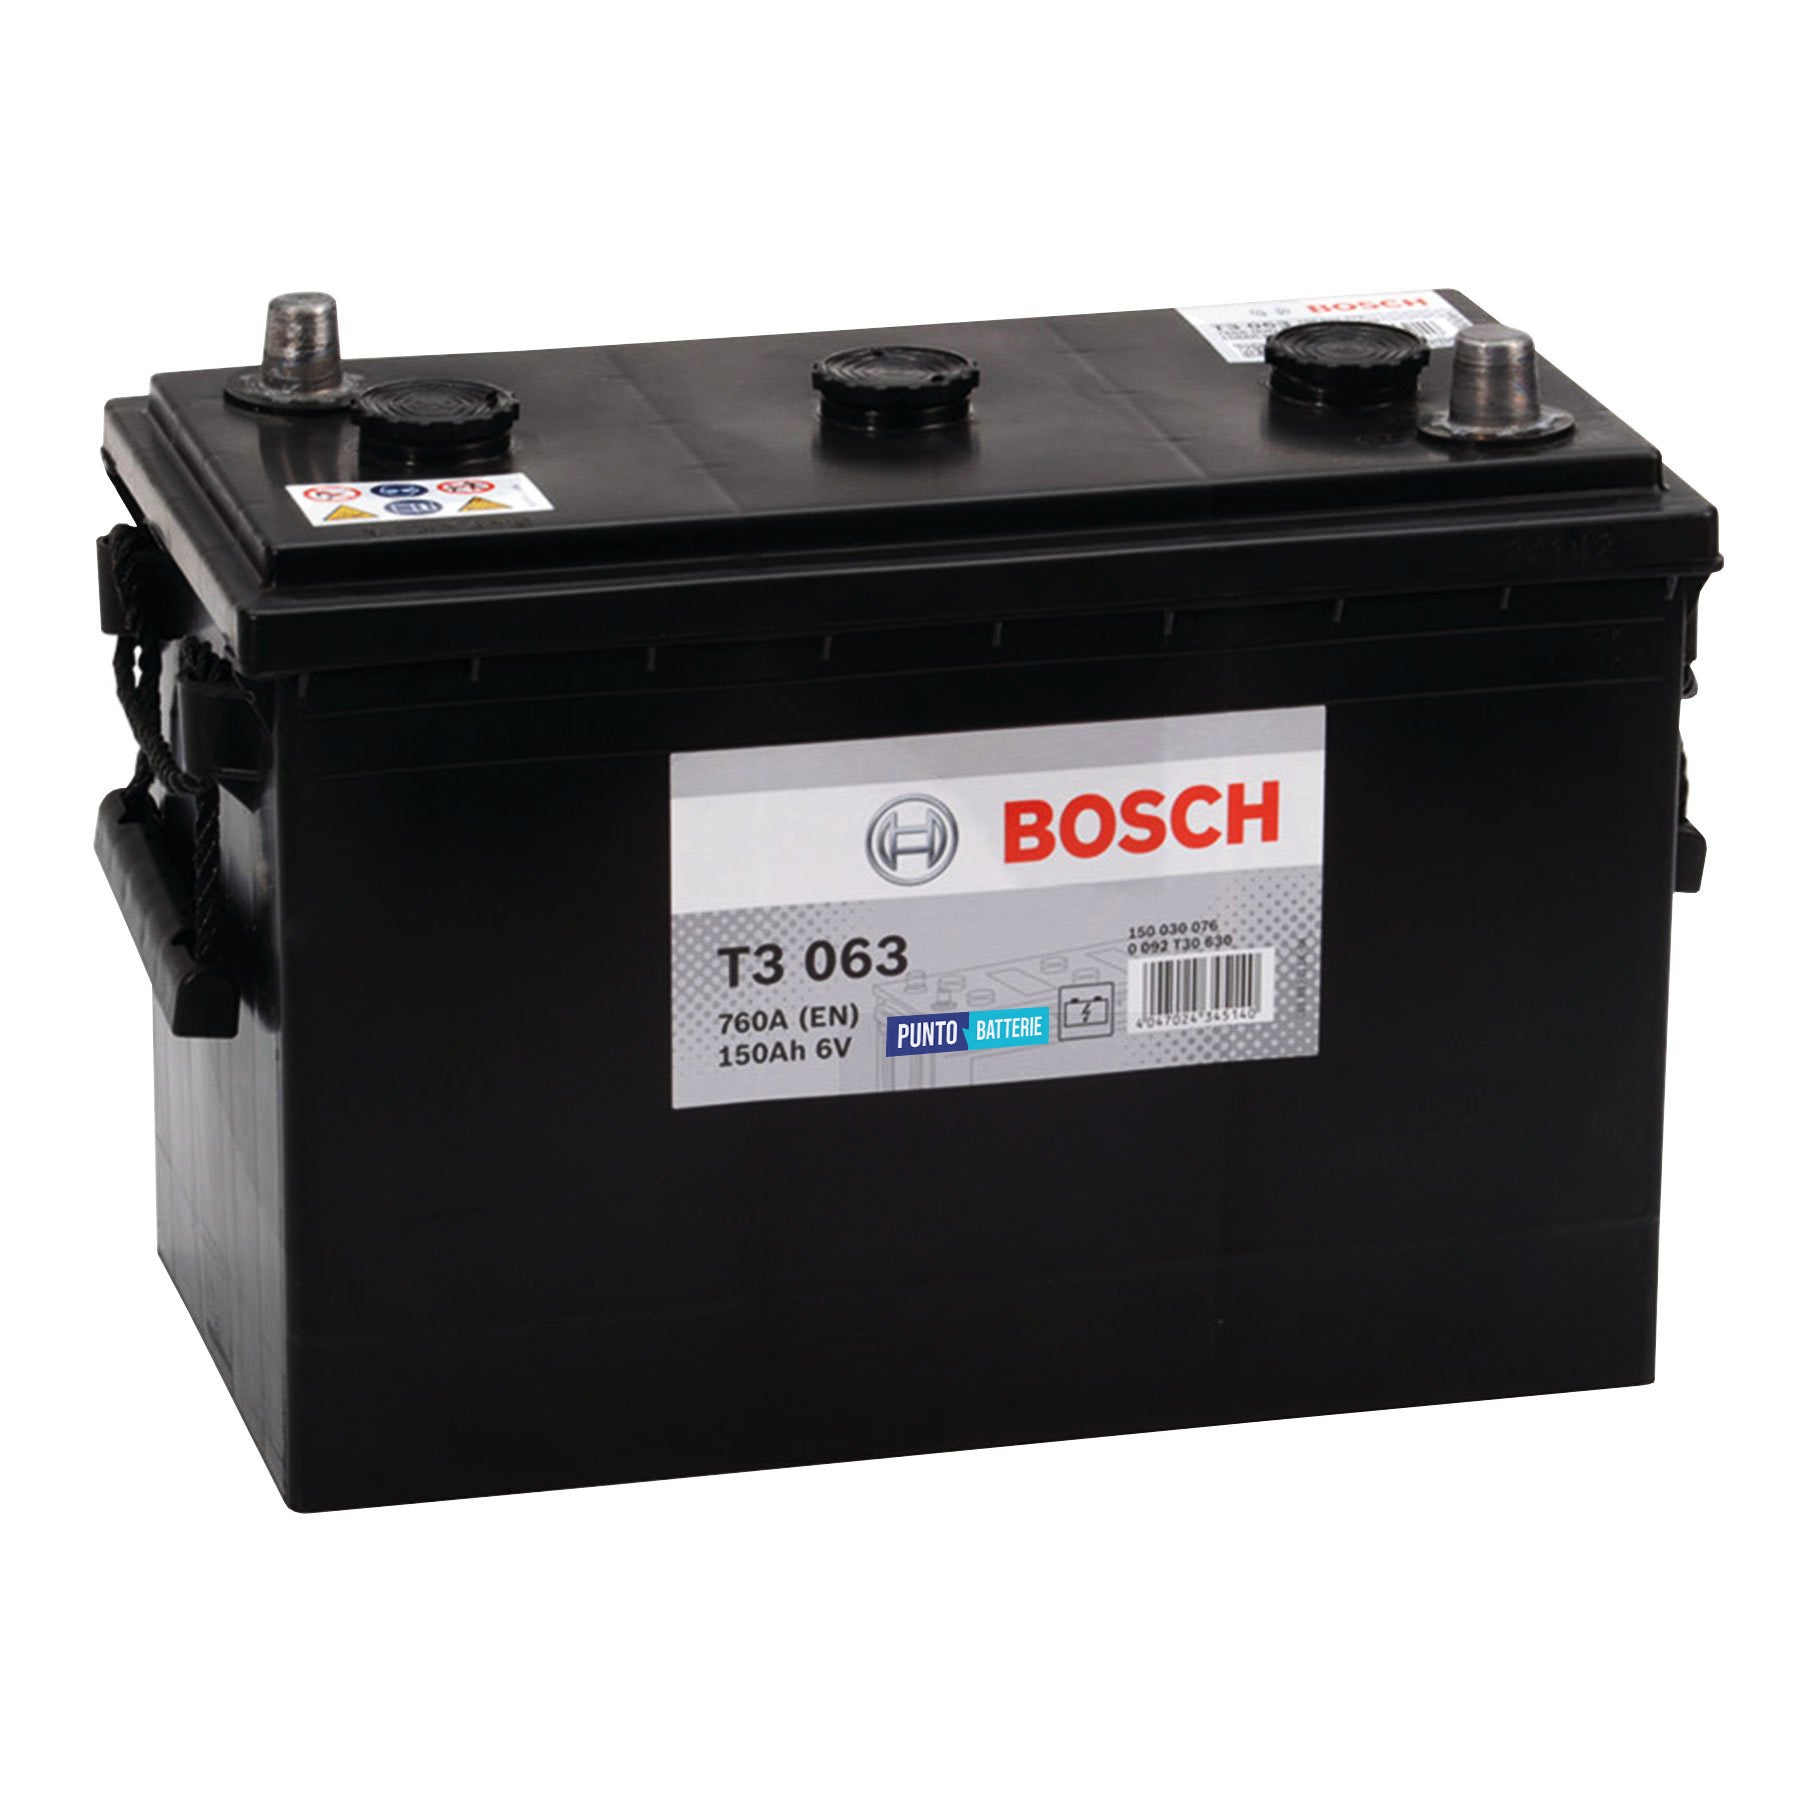 Batteria originale Bosch T3 T3063, dimensioni 333 x 175 x 235, polo positivo a destra, 6 volt, 150 amperora, 760 ampere. Batteria per camion e veicoli pesanti.